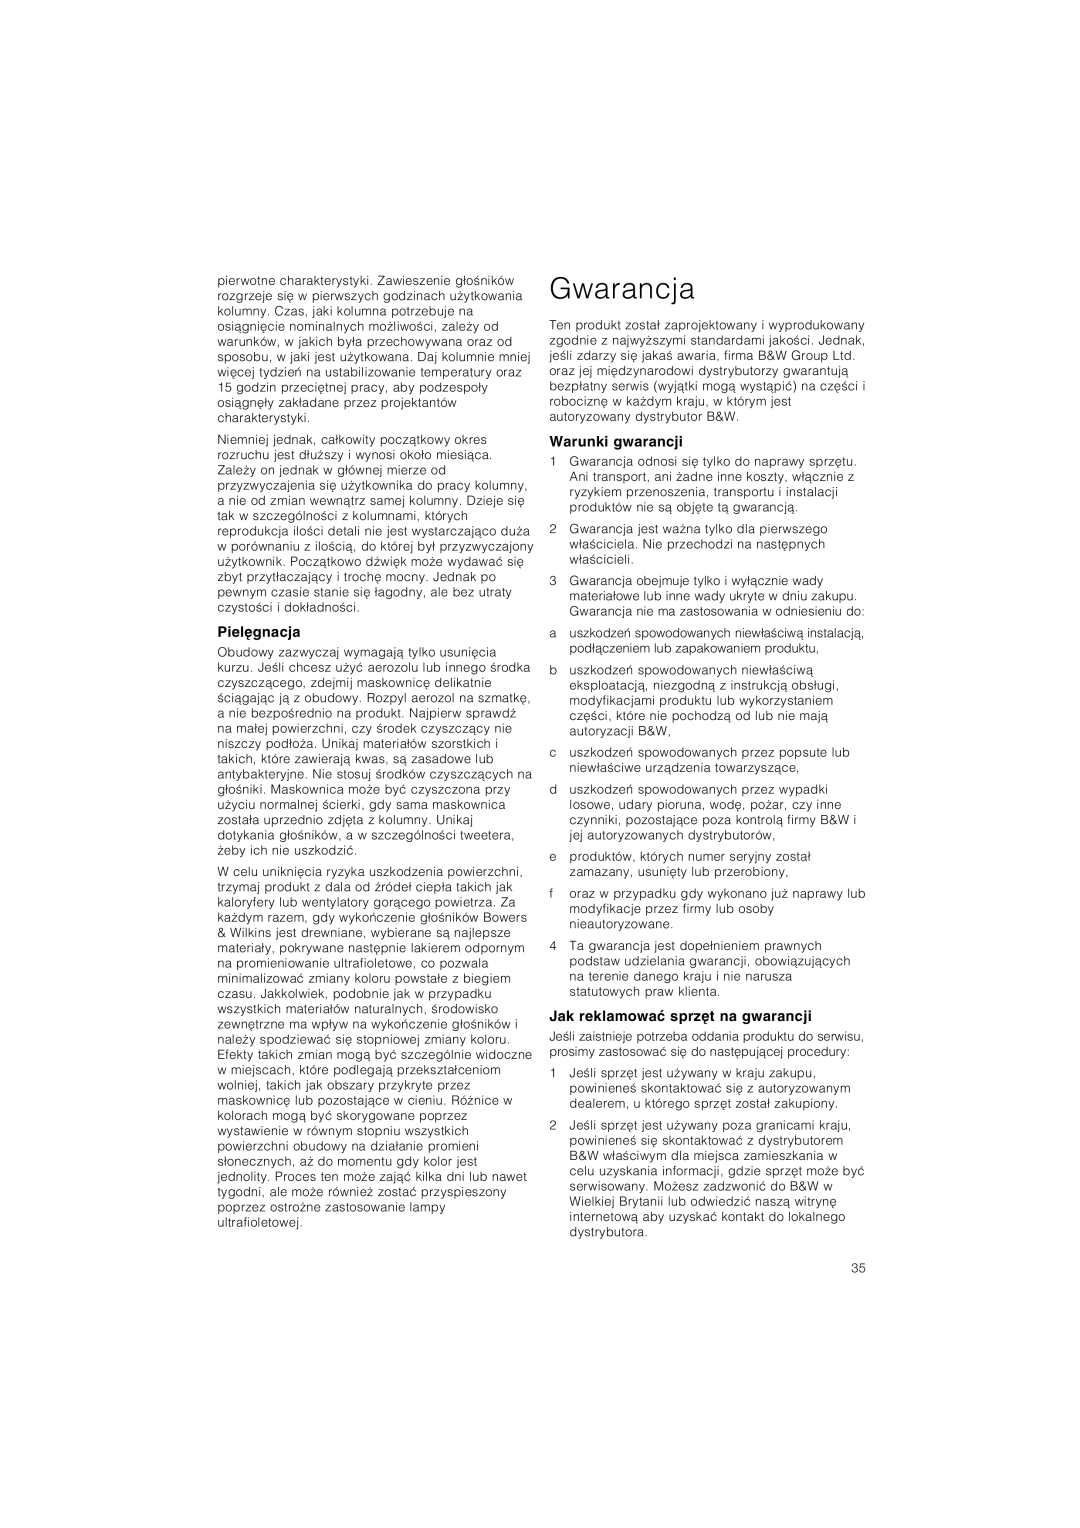 Bowers & Wilkins CM5 owner manual Gwarancja, Piel∆gnacja, Warunki gwarancji, Jak reklamowaπ sprz∆t na gwarancji 